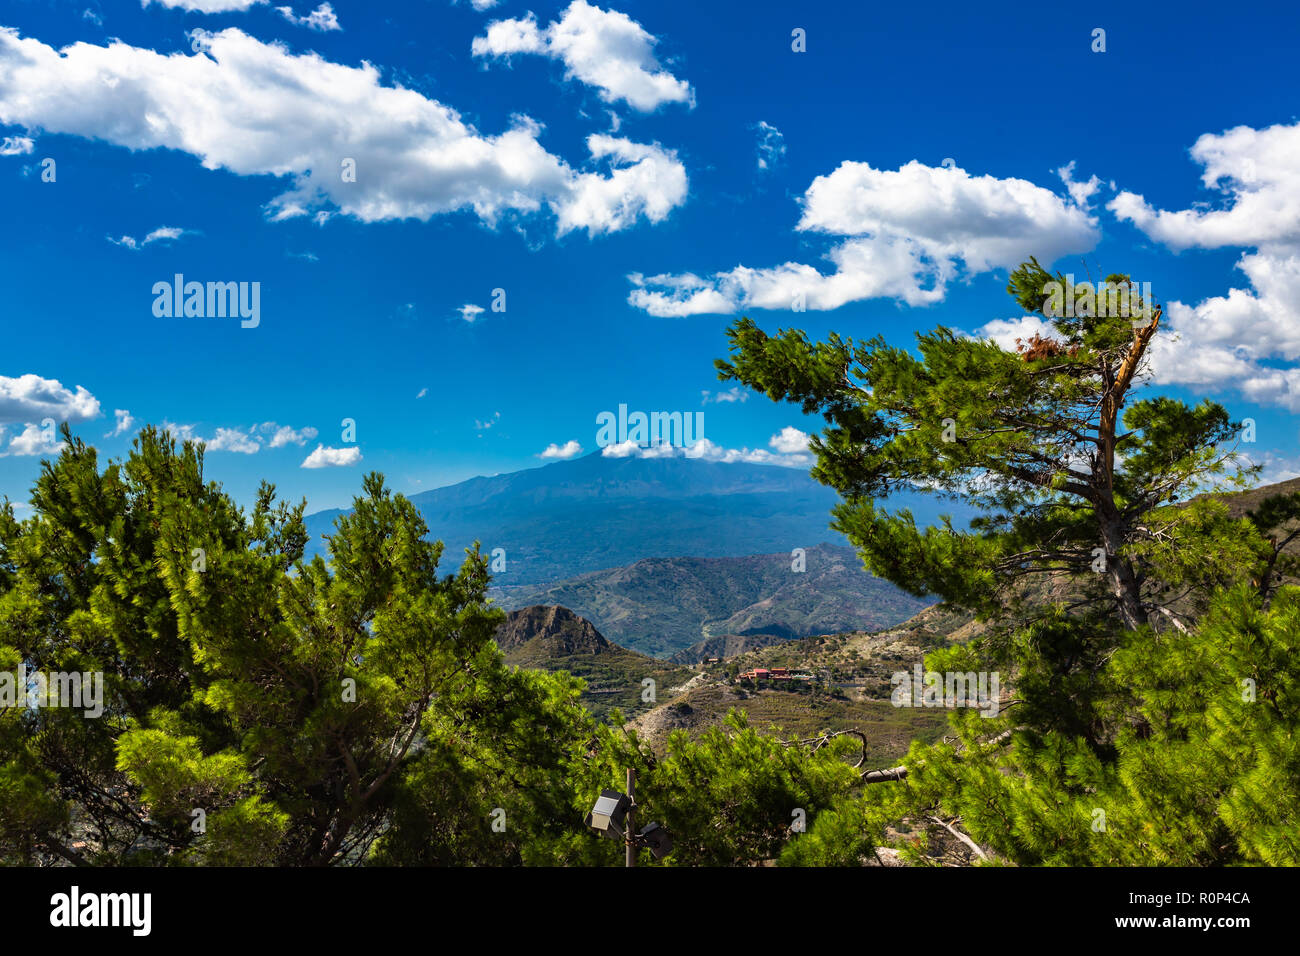 Der Blick aus dem kleinen Dorf Castelmola am Berg oberhalb von Taormina, mit Blick auf das Mittelmeer und die Skyline von Taormina. Stockfoto